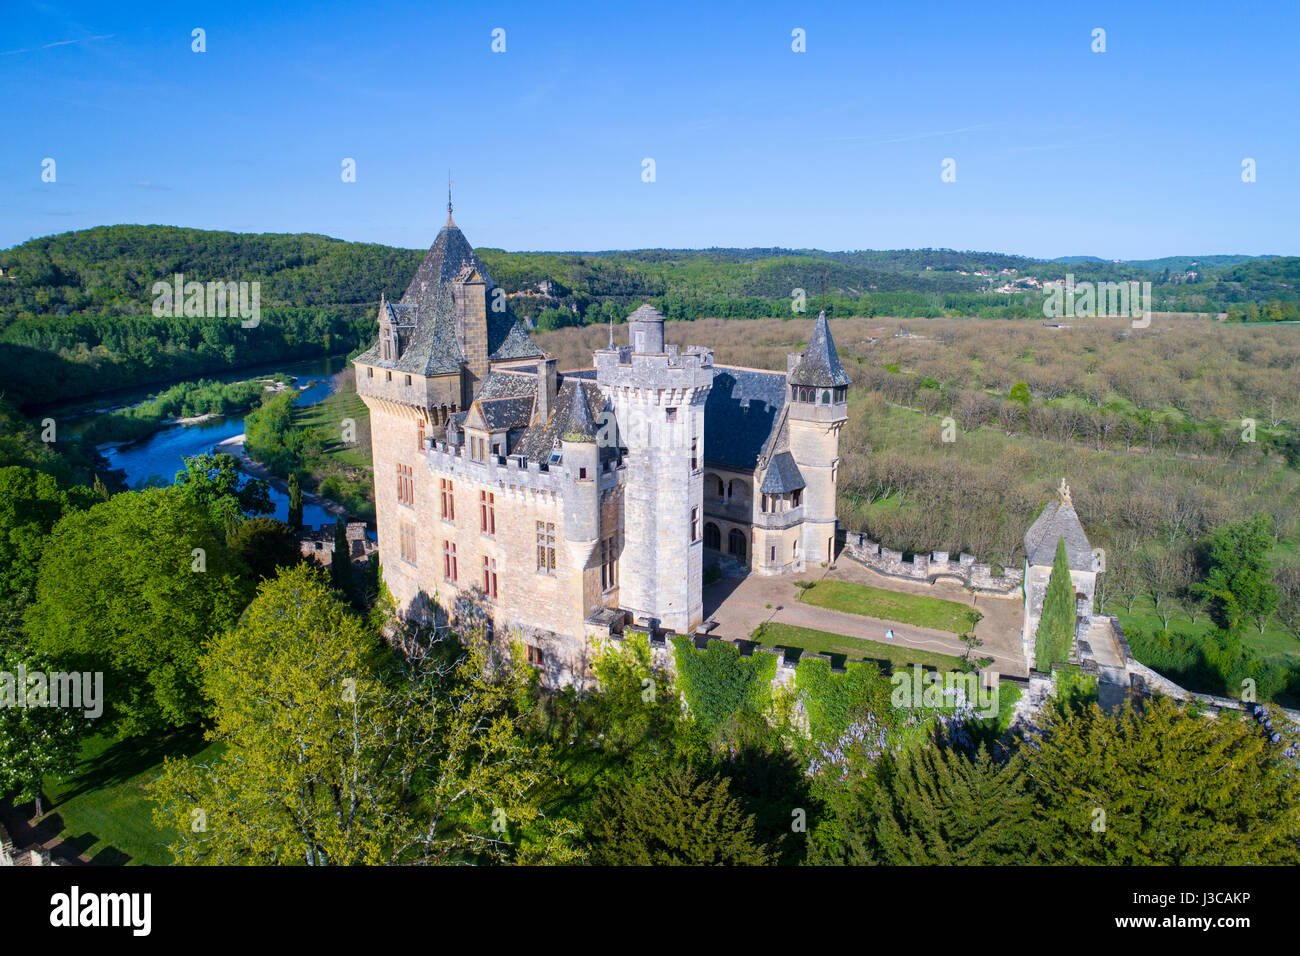 Aerial view of Chateau de Montfort, Dordogne, France. Stock Photo